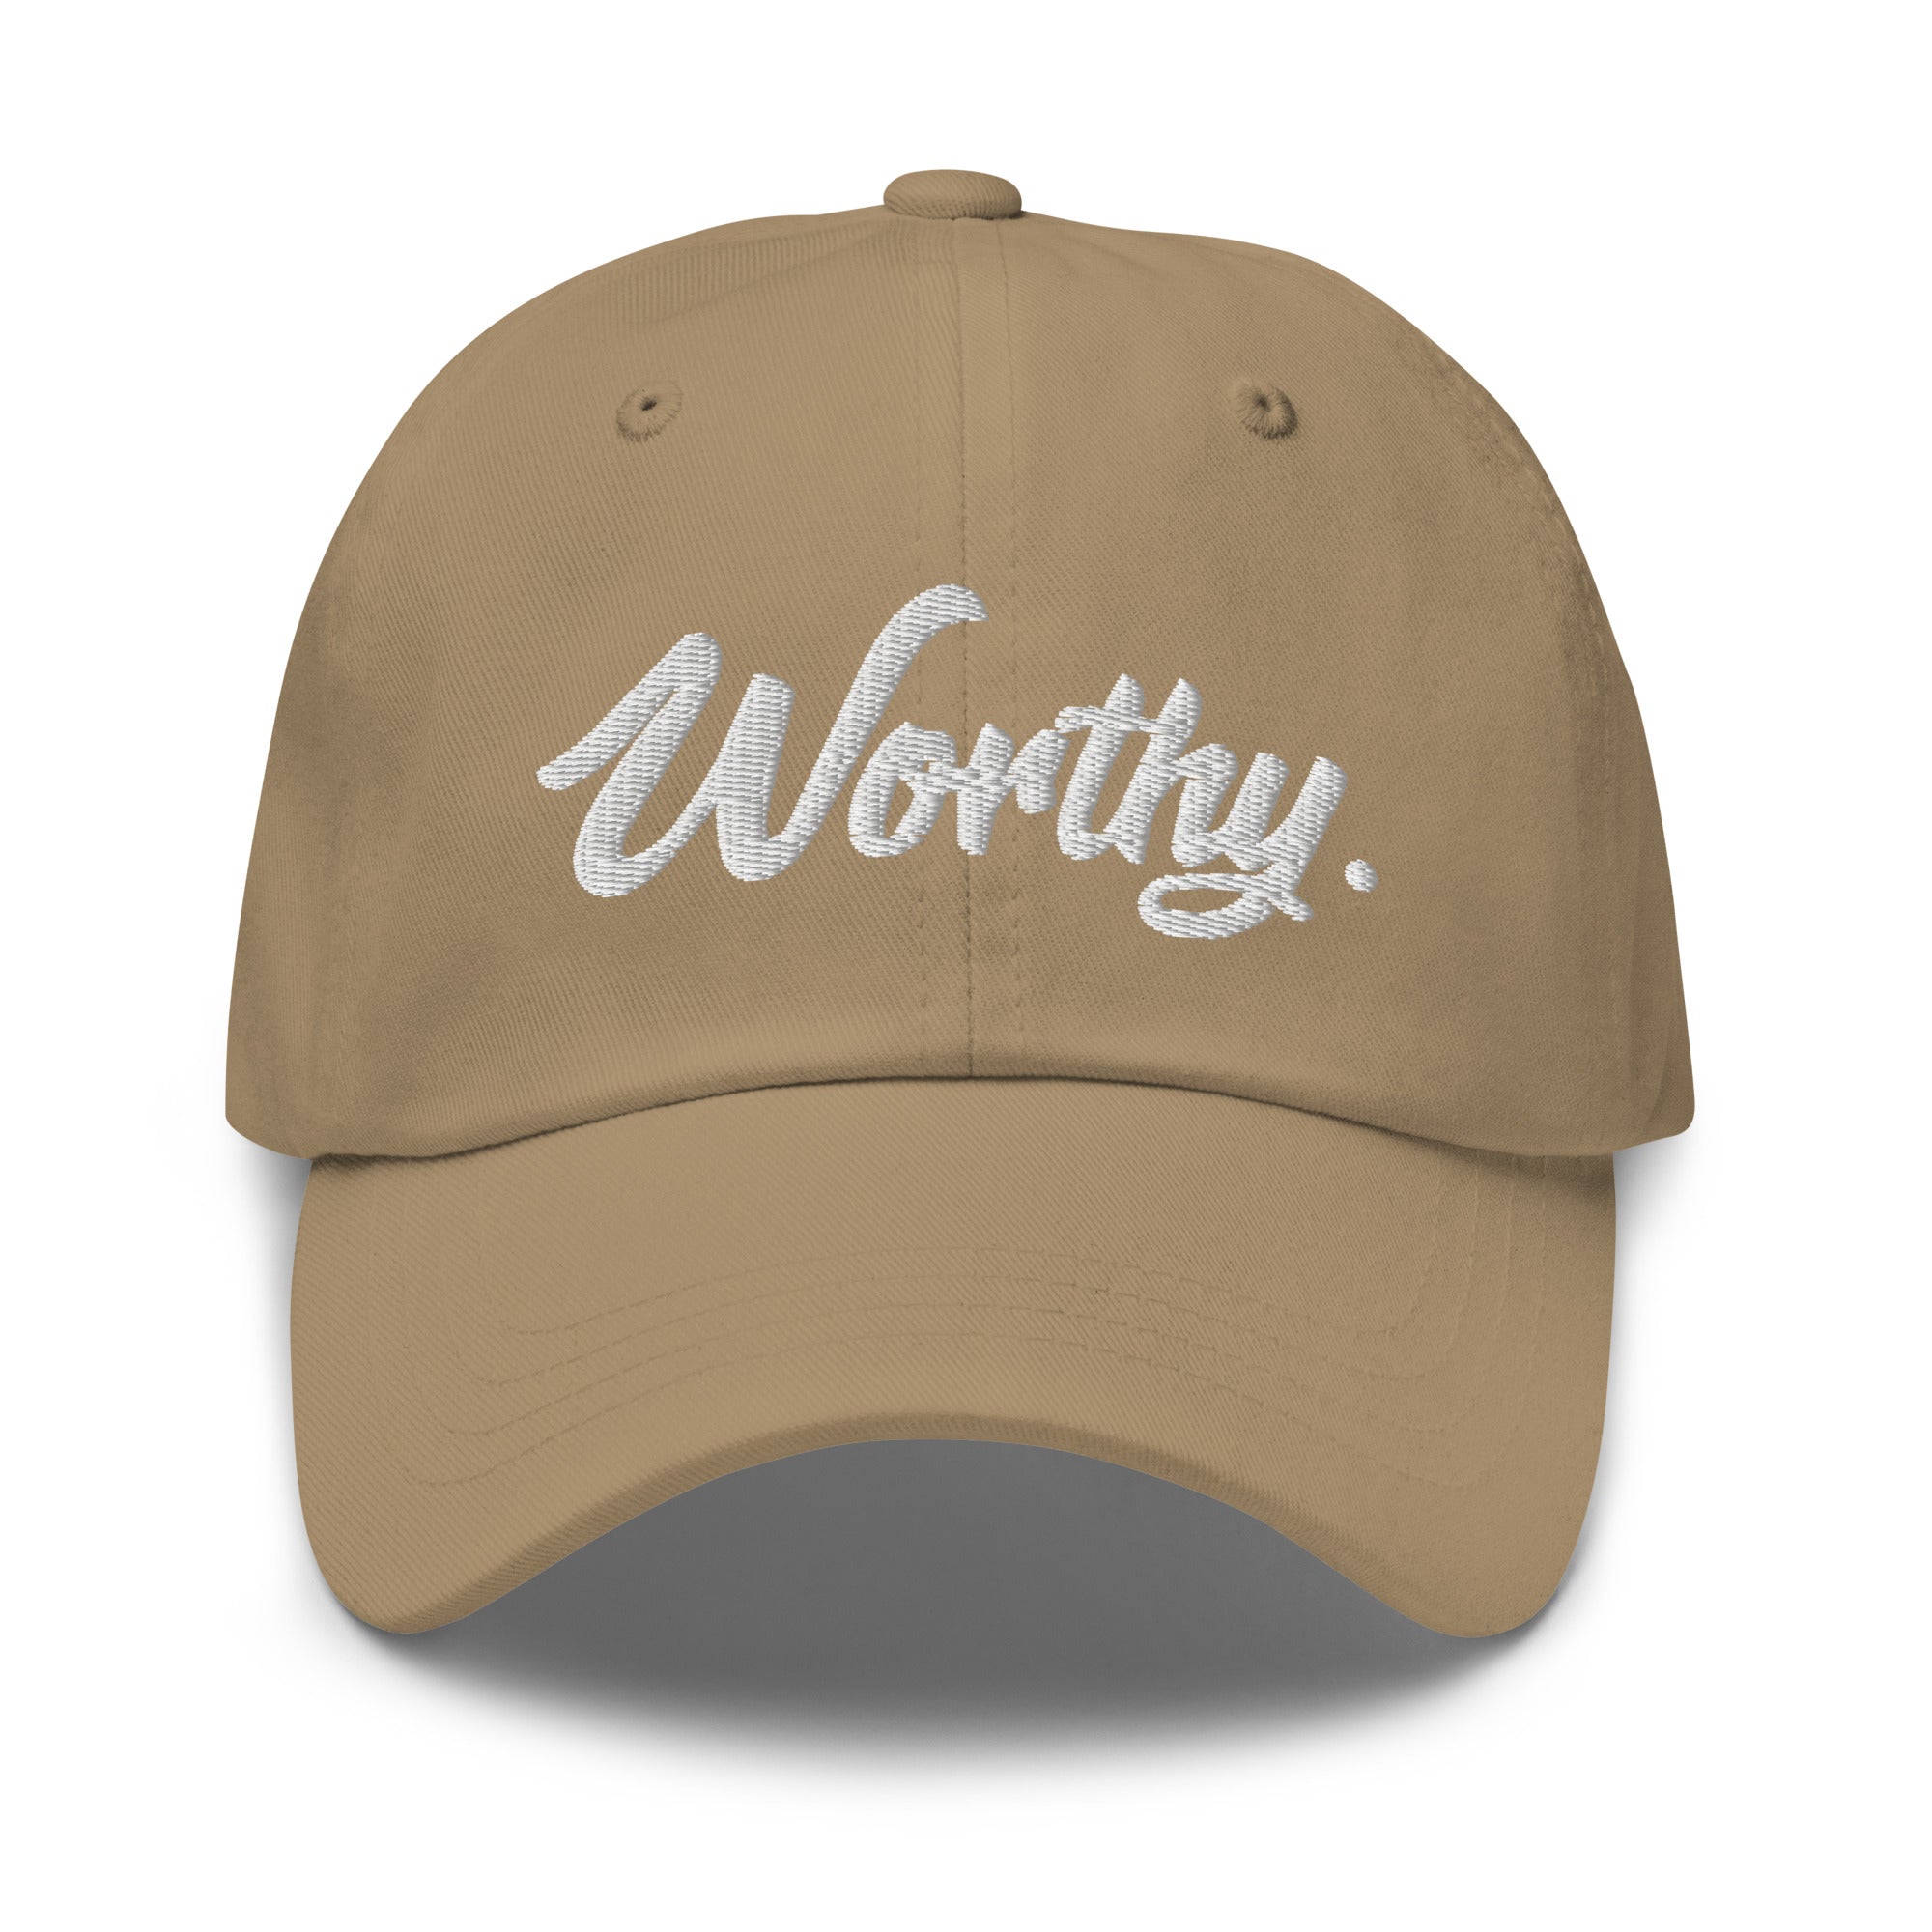 Worthy. Dad hat